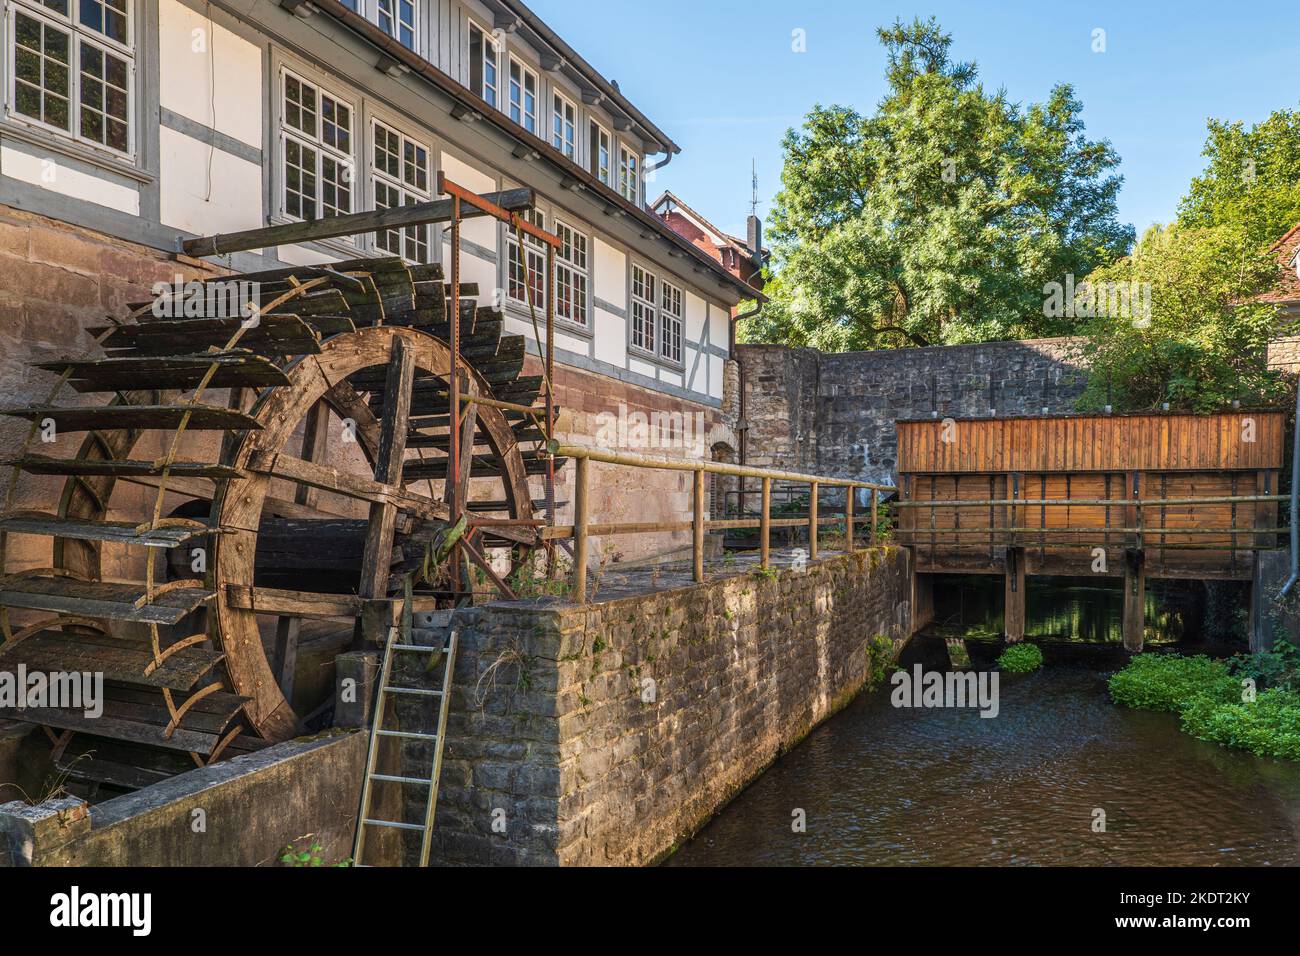 Old Lohmuehle, moulin à eau avec roue de moulin à farine à Goettingen, Allemagne Banque D'Images